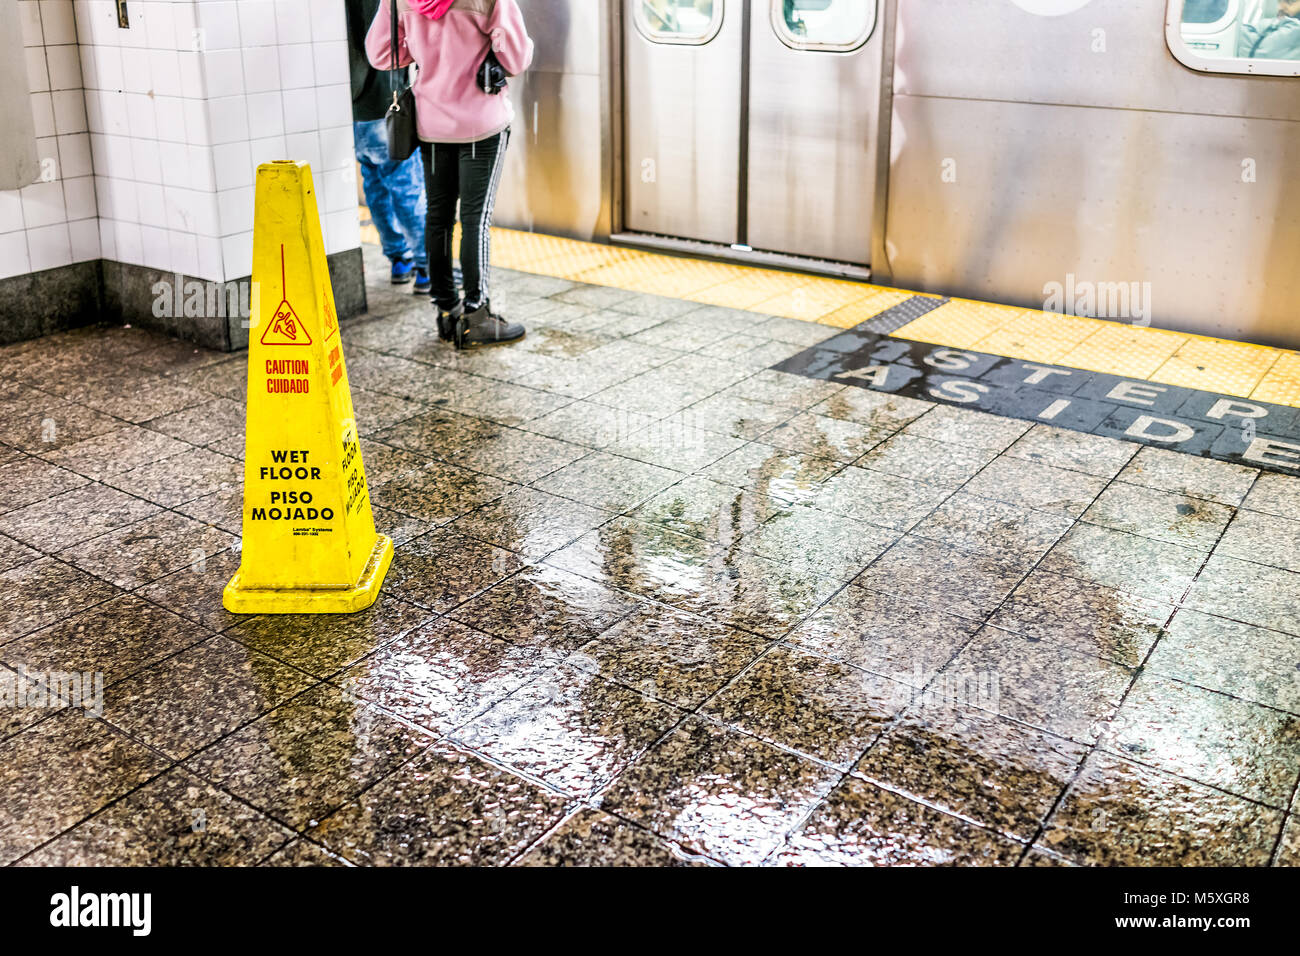 La città di New York, Stati Uniti d'America - 29 Ottobre 2017: Attesa di persone in transito sotterraneo vuoto grande piattaforma in NYC Stazione della Metropolitana, primo piano del pavimento bagnato segno sli Foto Stock